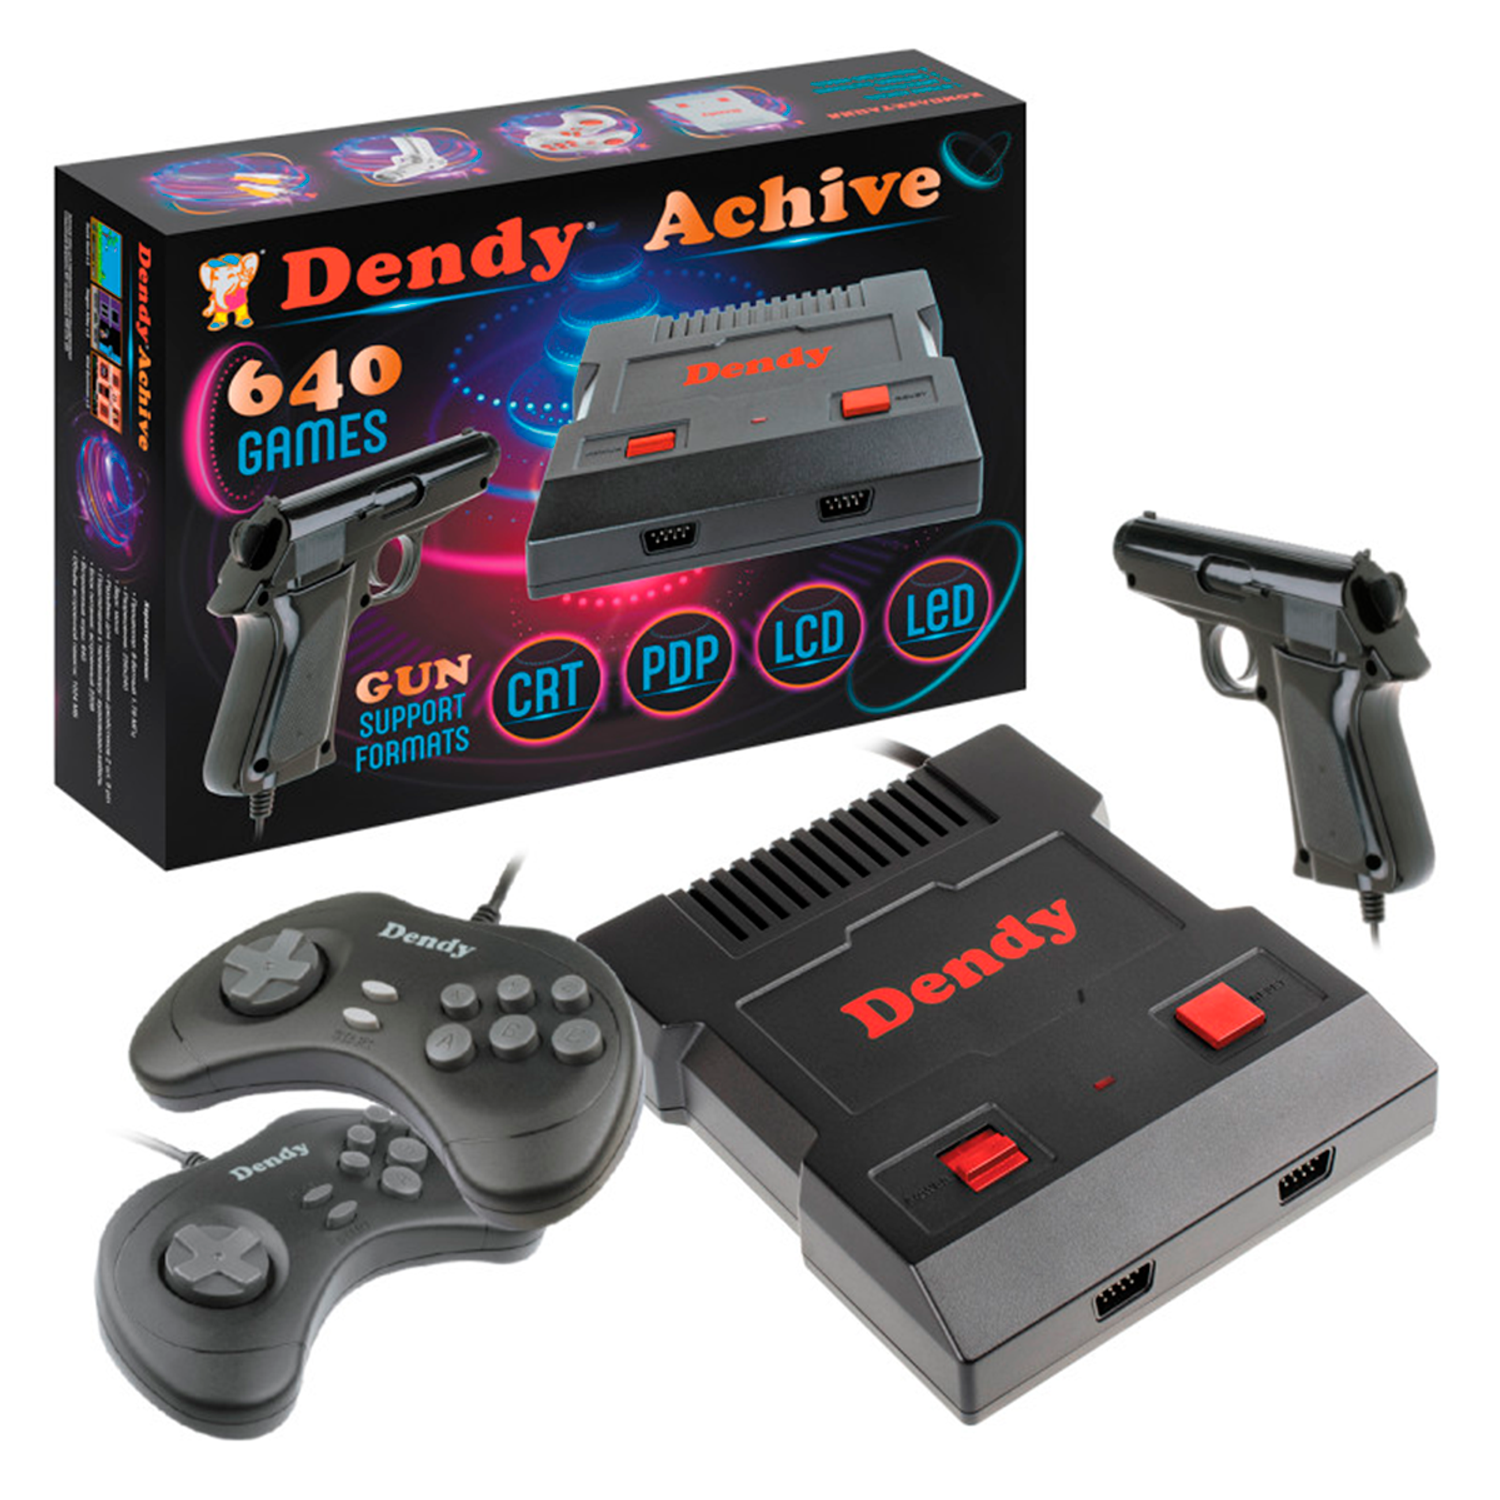 Игровая приставка Dendy Achive 640 игр и световой пистолет чёрная - фото 1